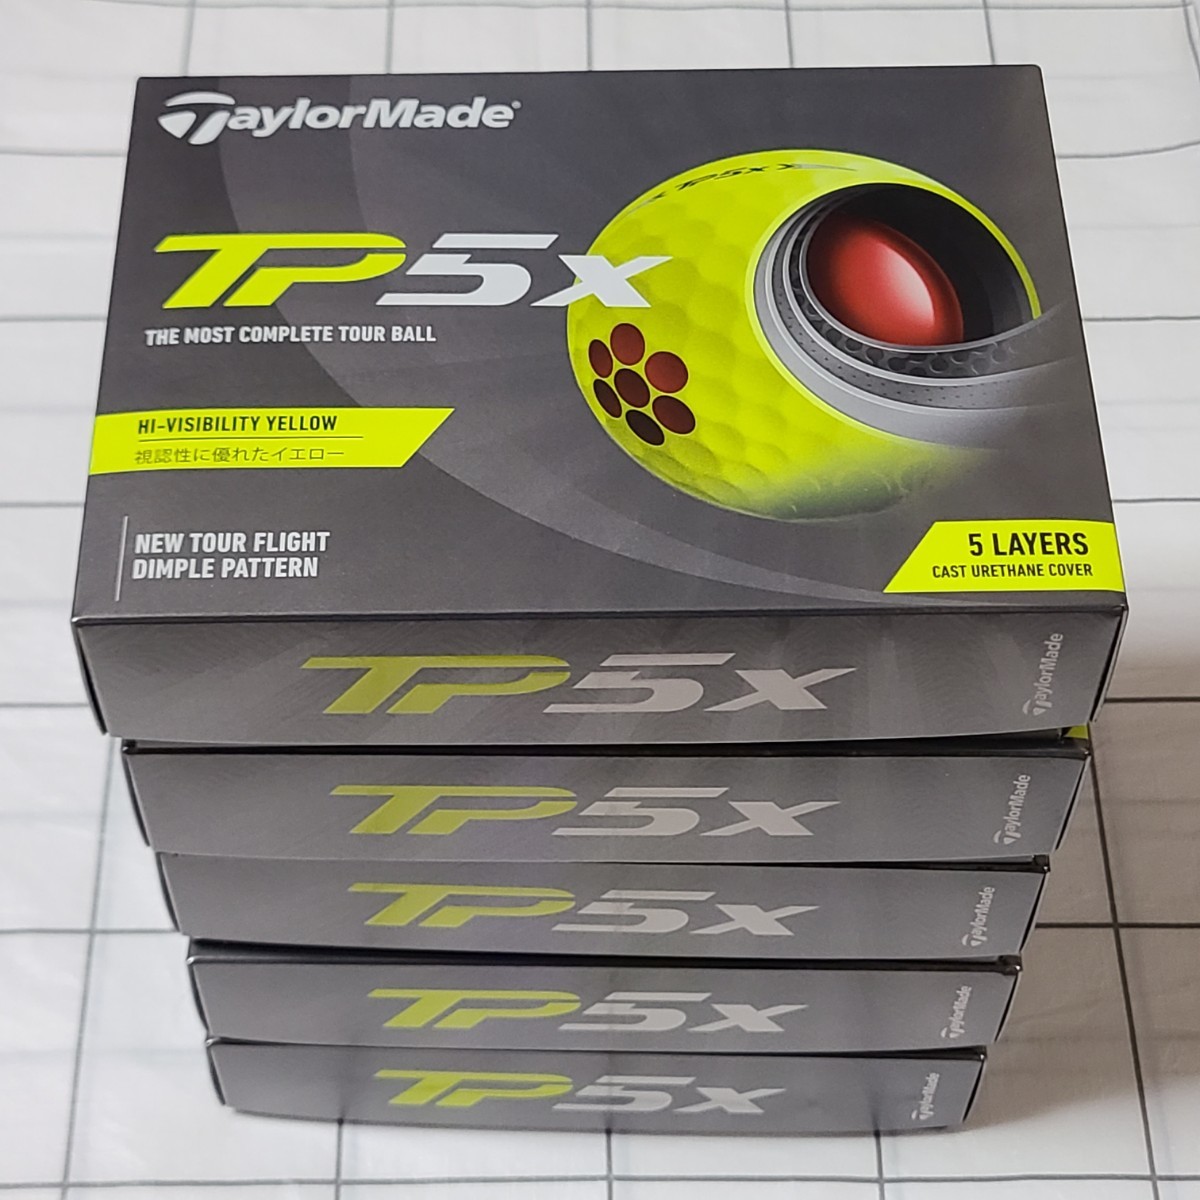 TaylorMade テーラーメイド TP5x イエロー 2021年モデル ゴルフボール 5ダースの画像1